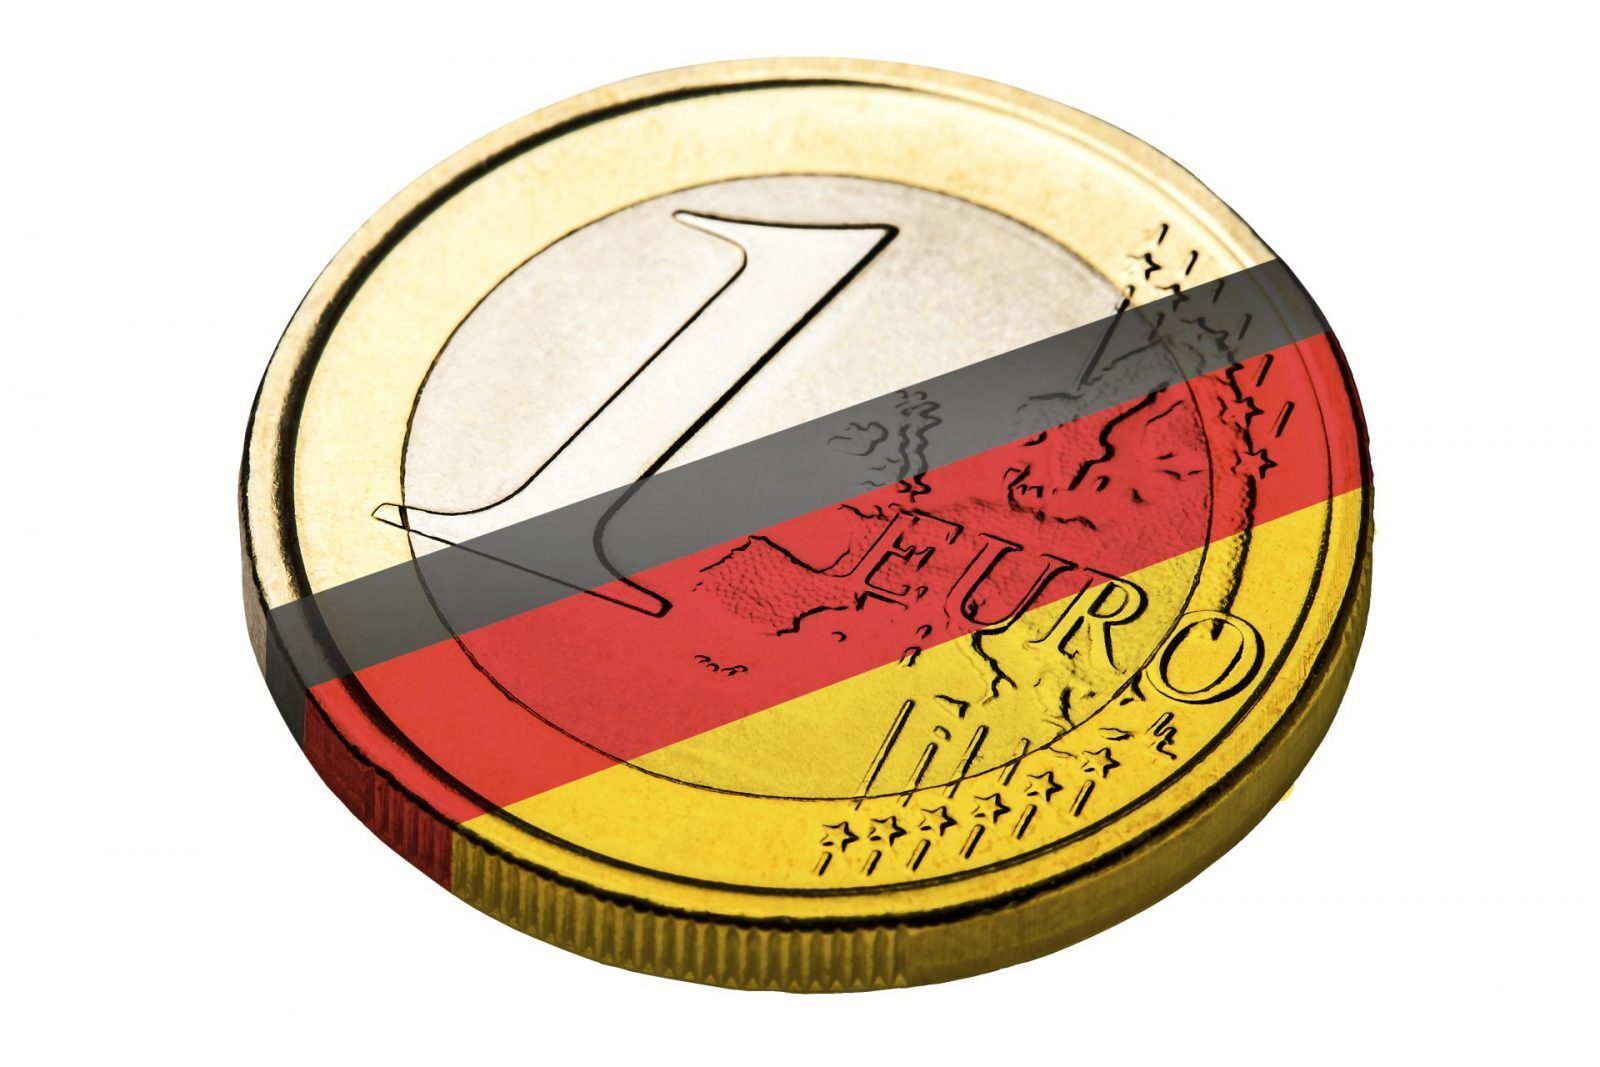 German economy